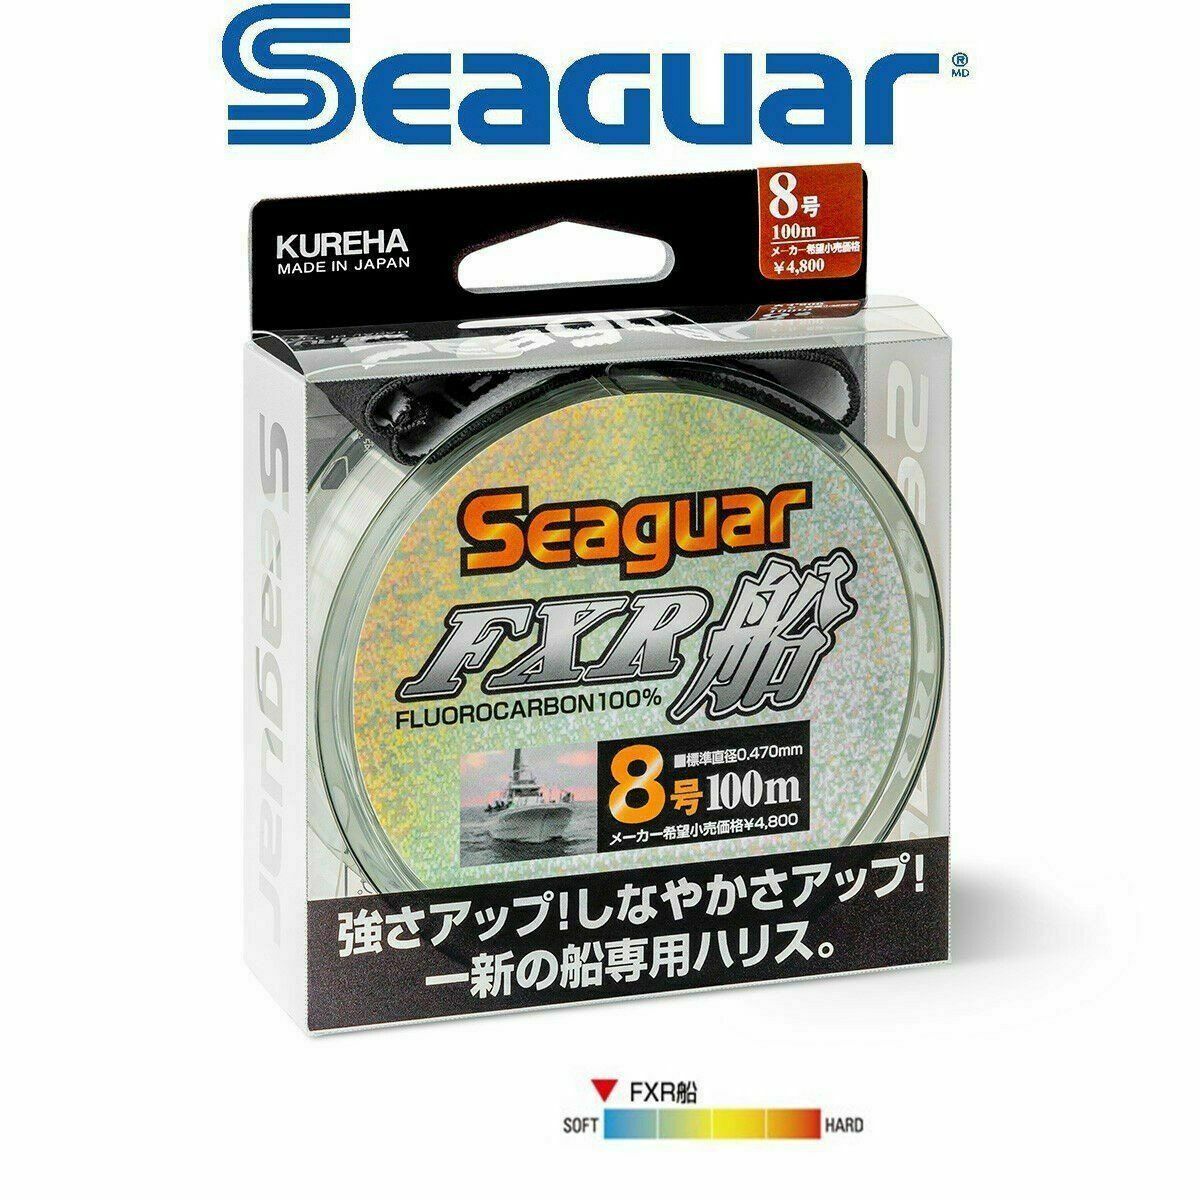 Seaguar FXR Fune %100 Fluoro Carbon Misina 100mt 0.700 mm